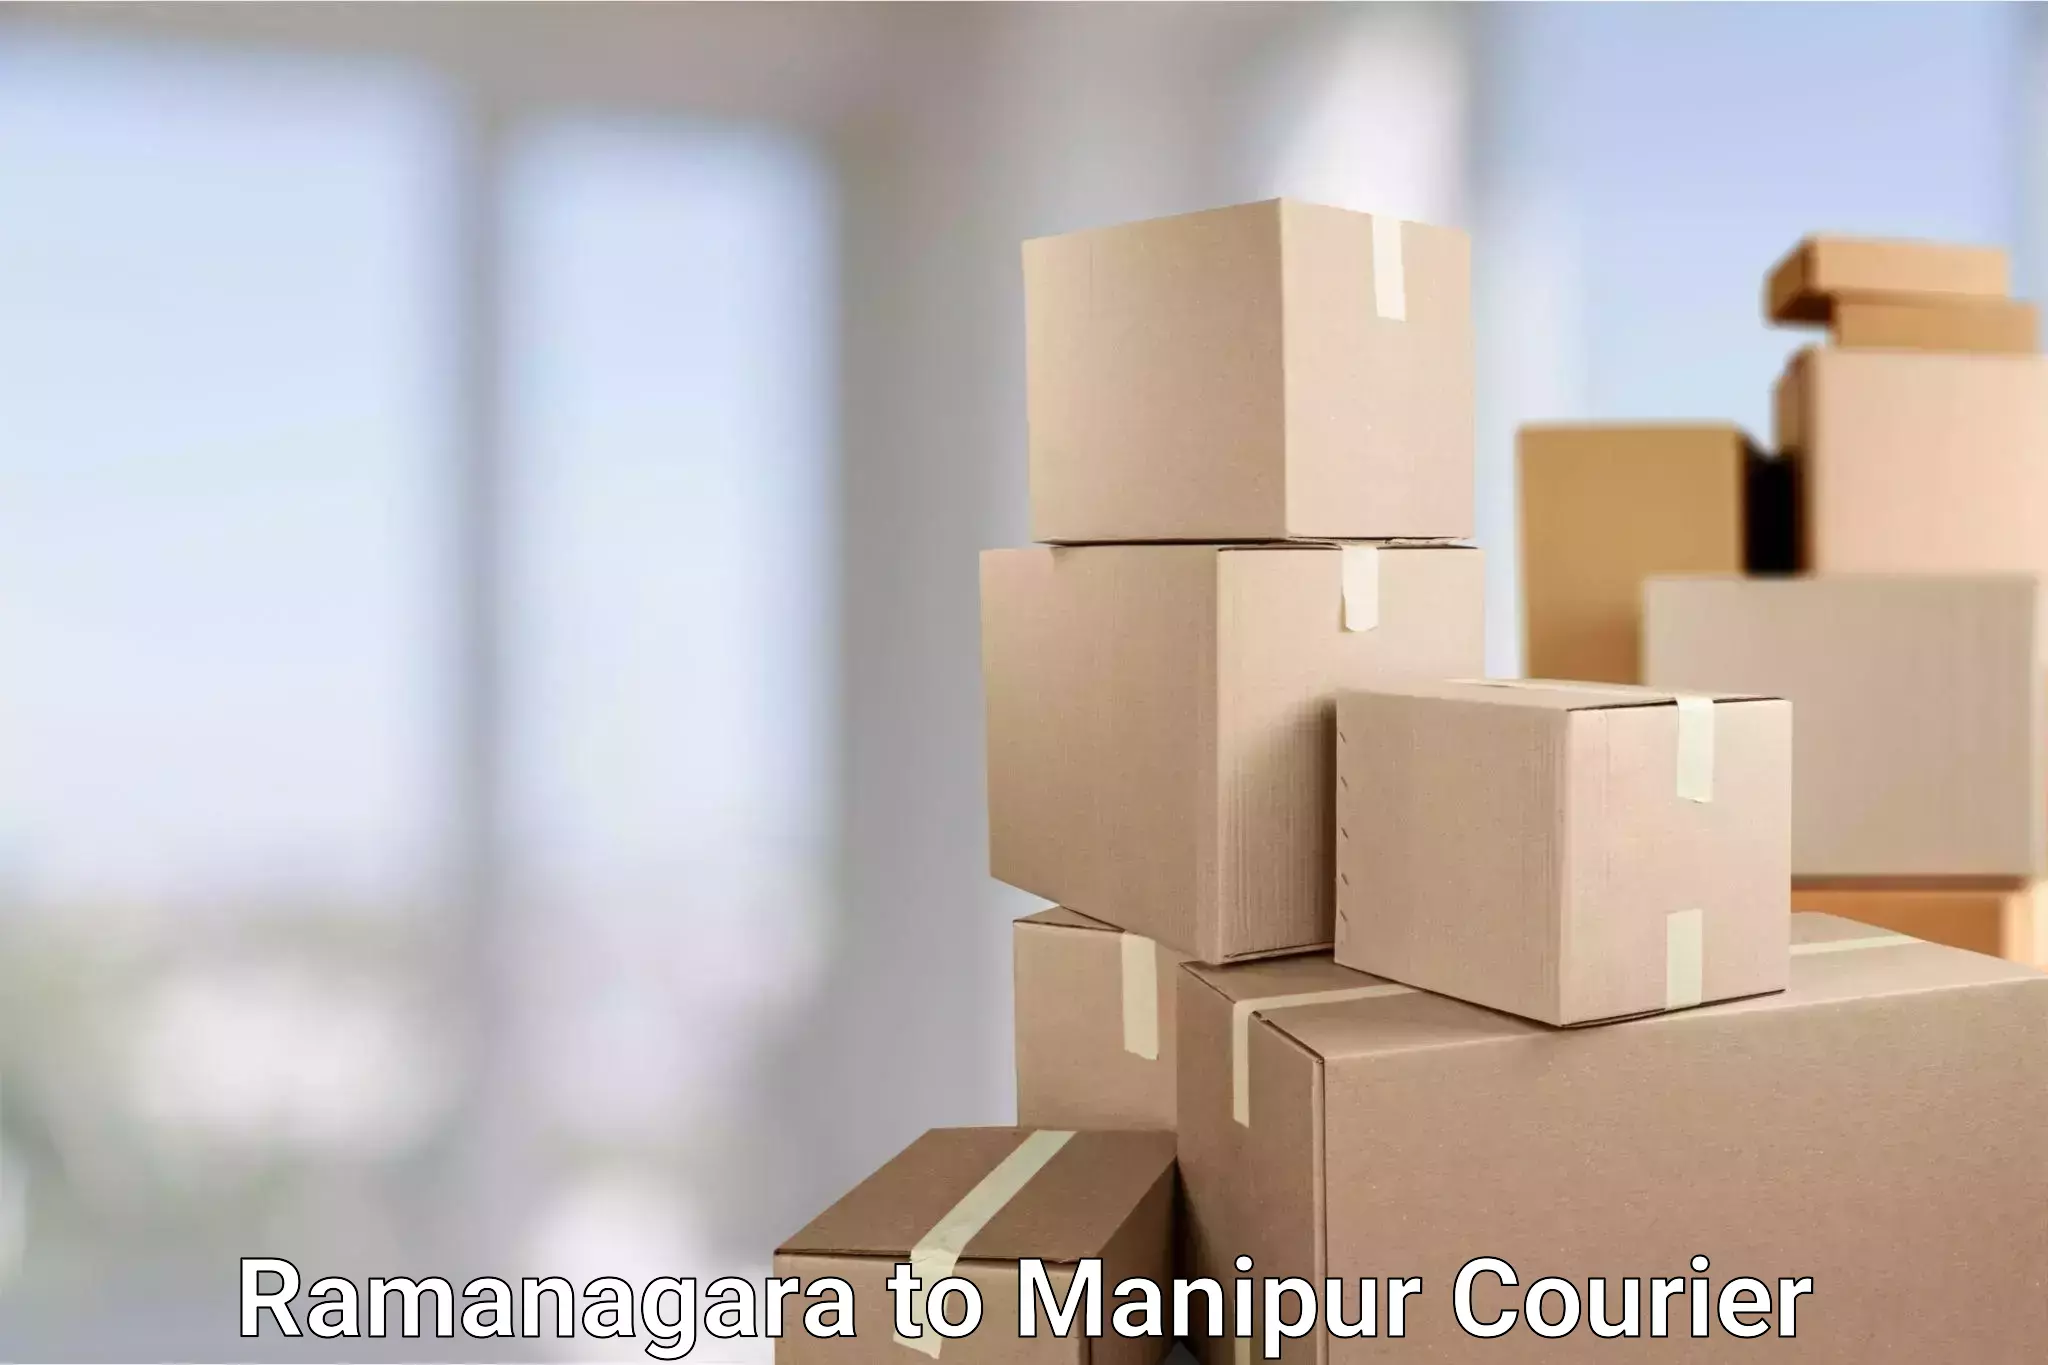 User-friendly courier app Ramanagara to Moirang